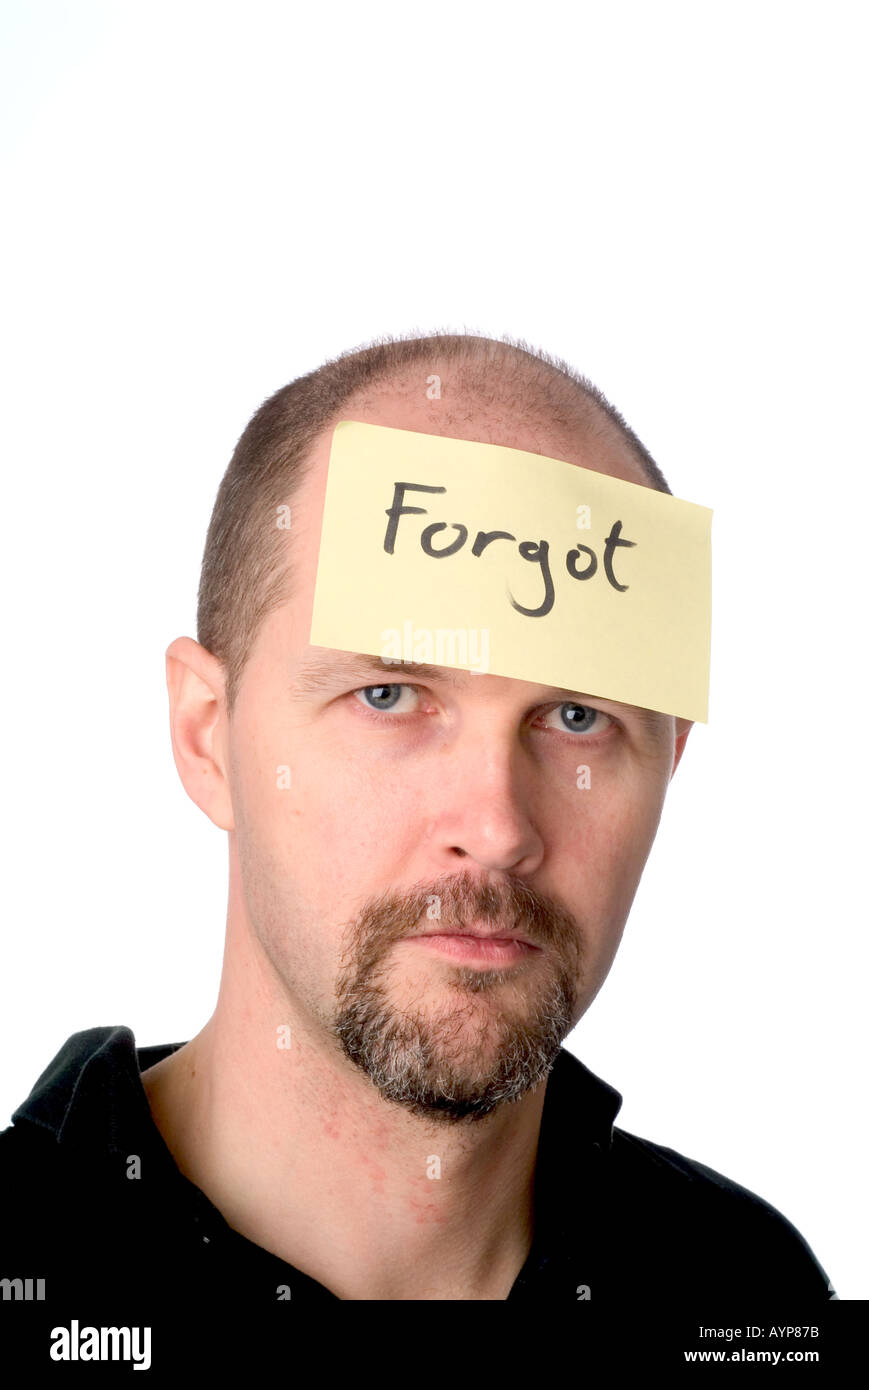 Uomo con post-it sulla sua testa che indica che egli ha dimenticato qualcosa dimenticato dimenticare smemorati memoria memoria cattivo compleanno Foto Stock